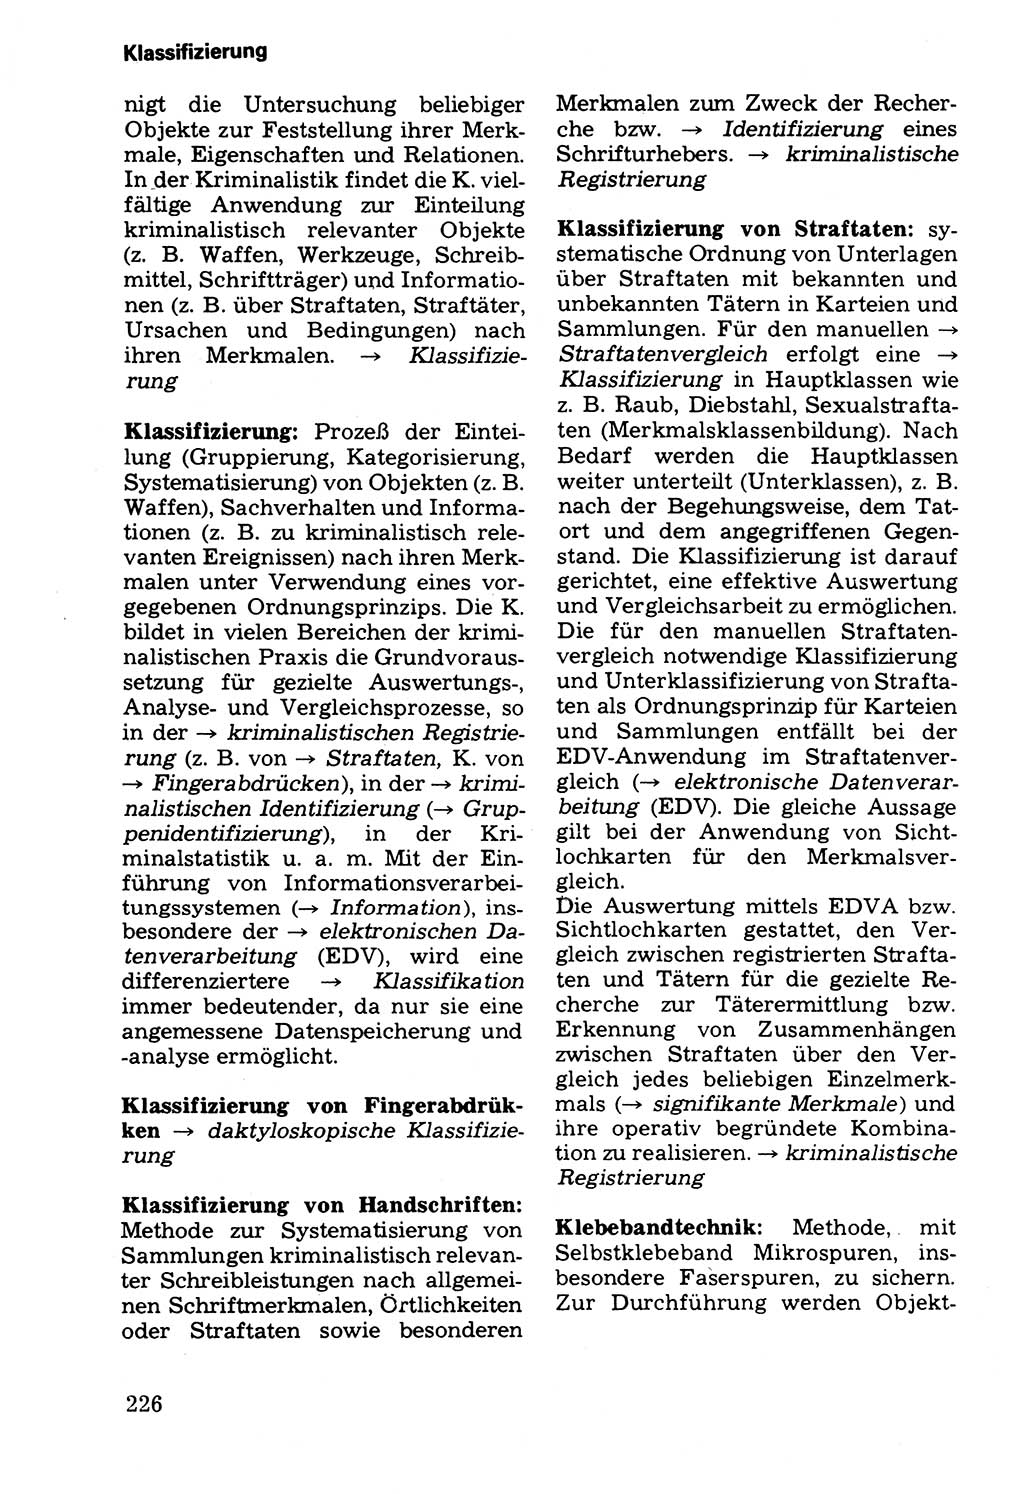 Wörterbuch der sozialistischen Kriminalistik [Deutsche Demokratische Republik (DDR)] 1981, Seite 226 (Wb. soz. Krim. DDR 1981, S. 226)